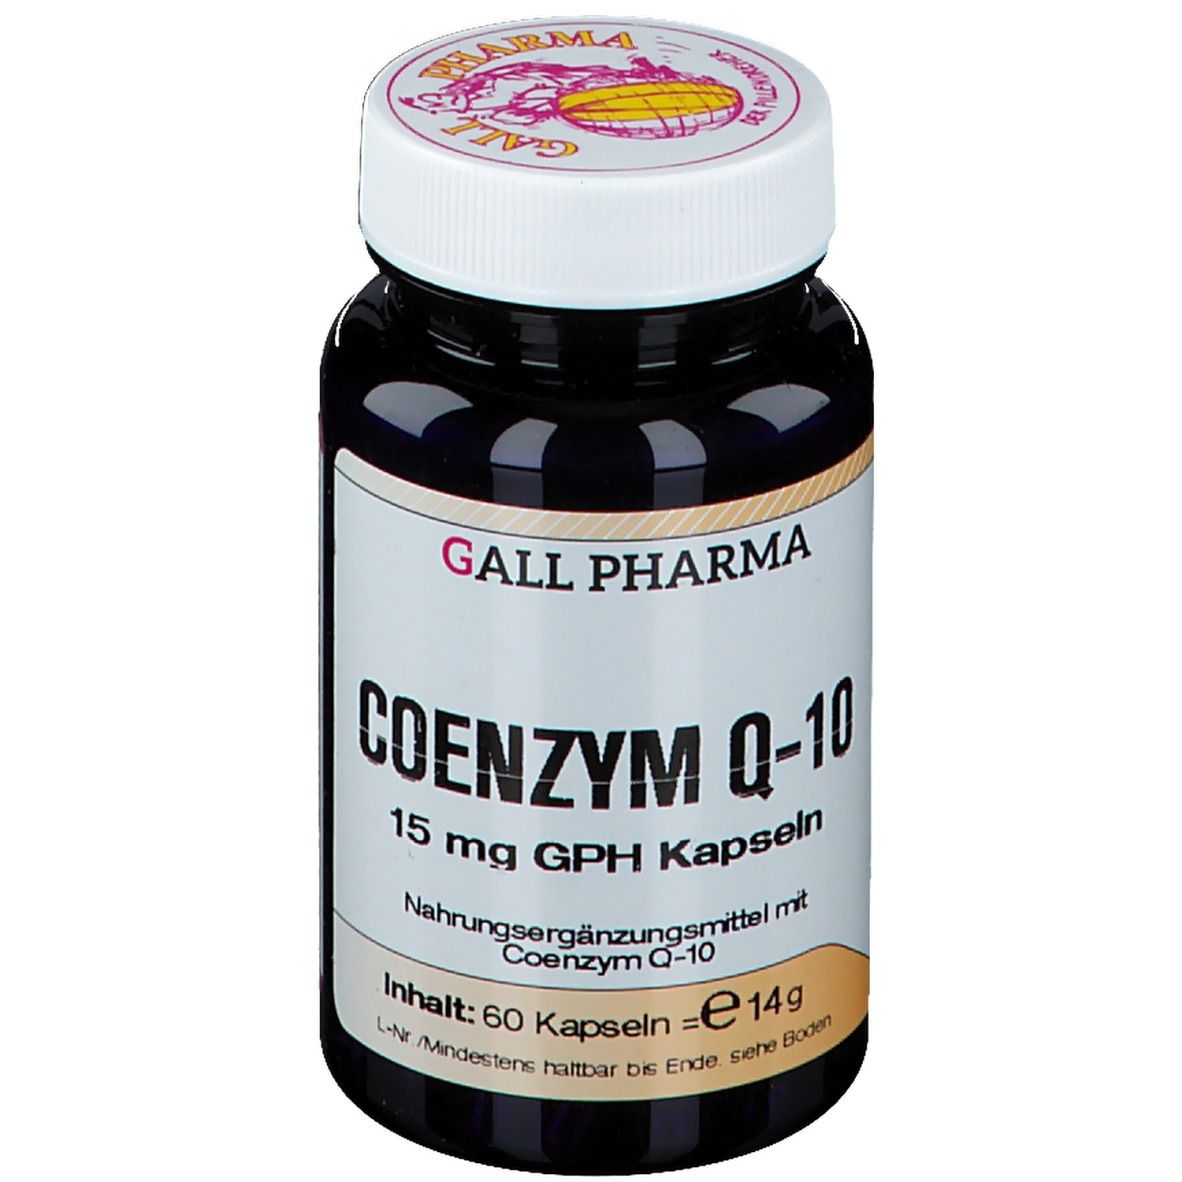 GALL PHARMA COENZYM Q-10 15 mg